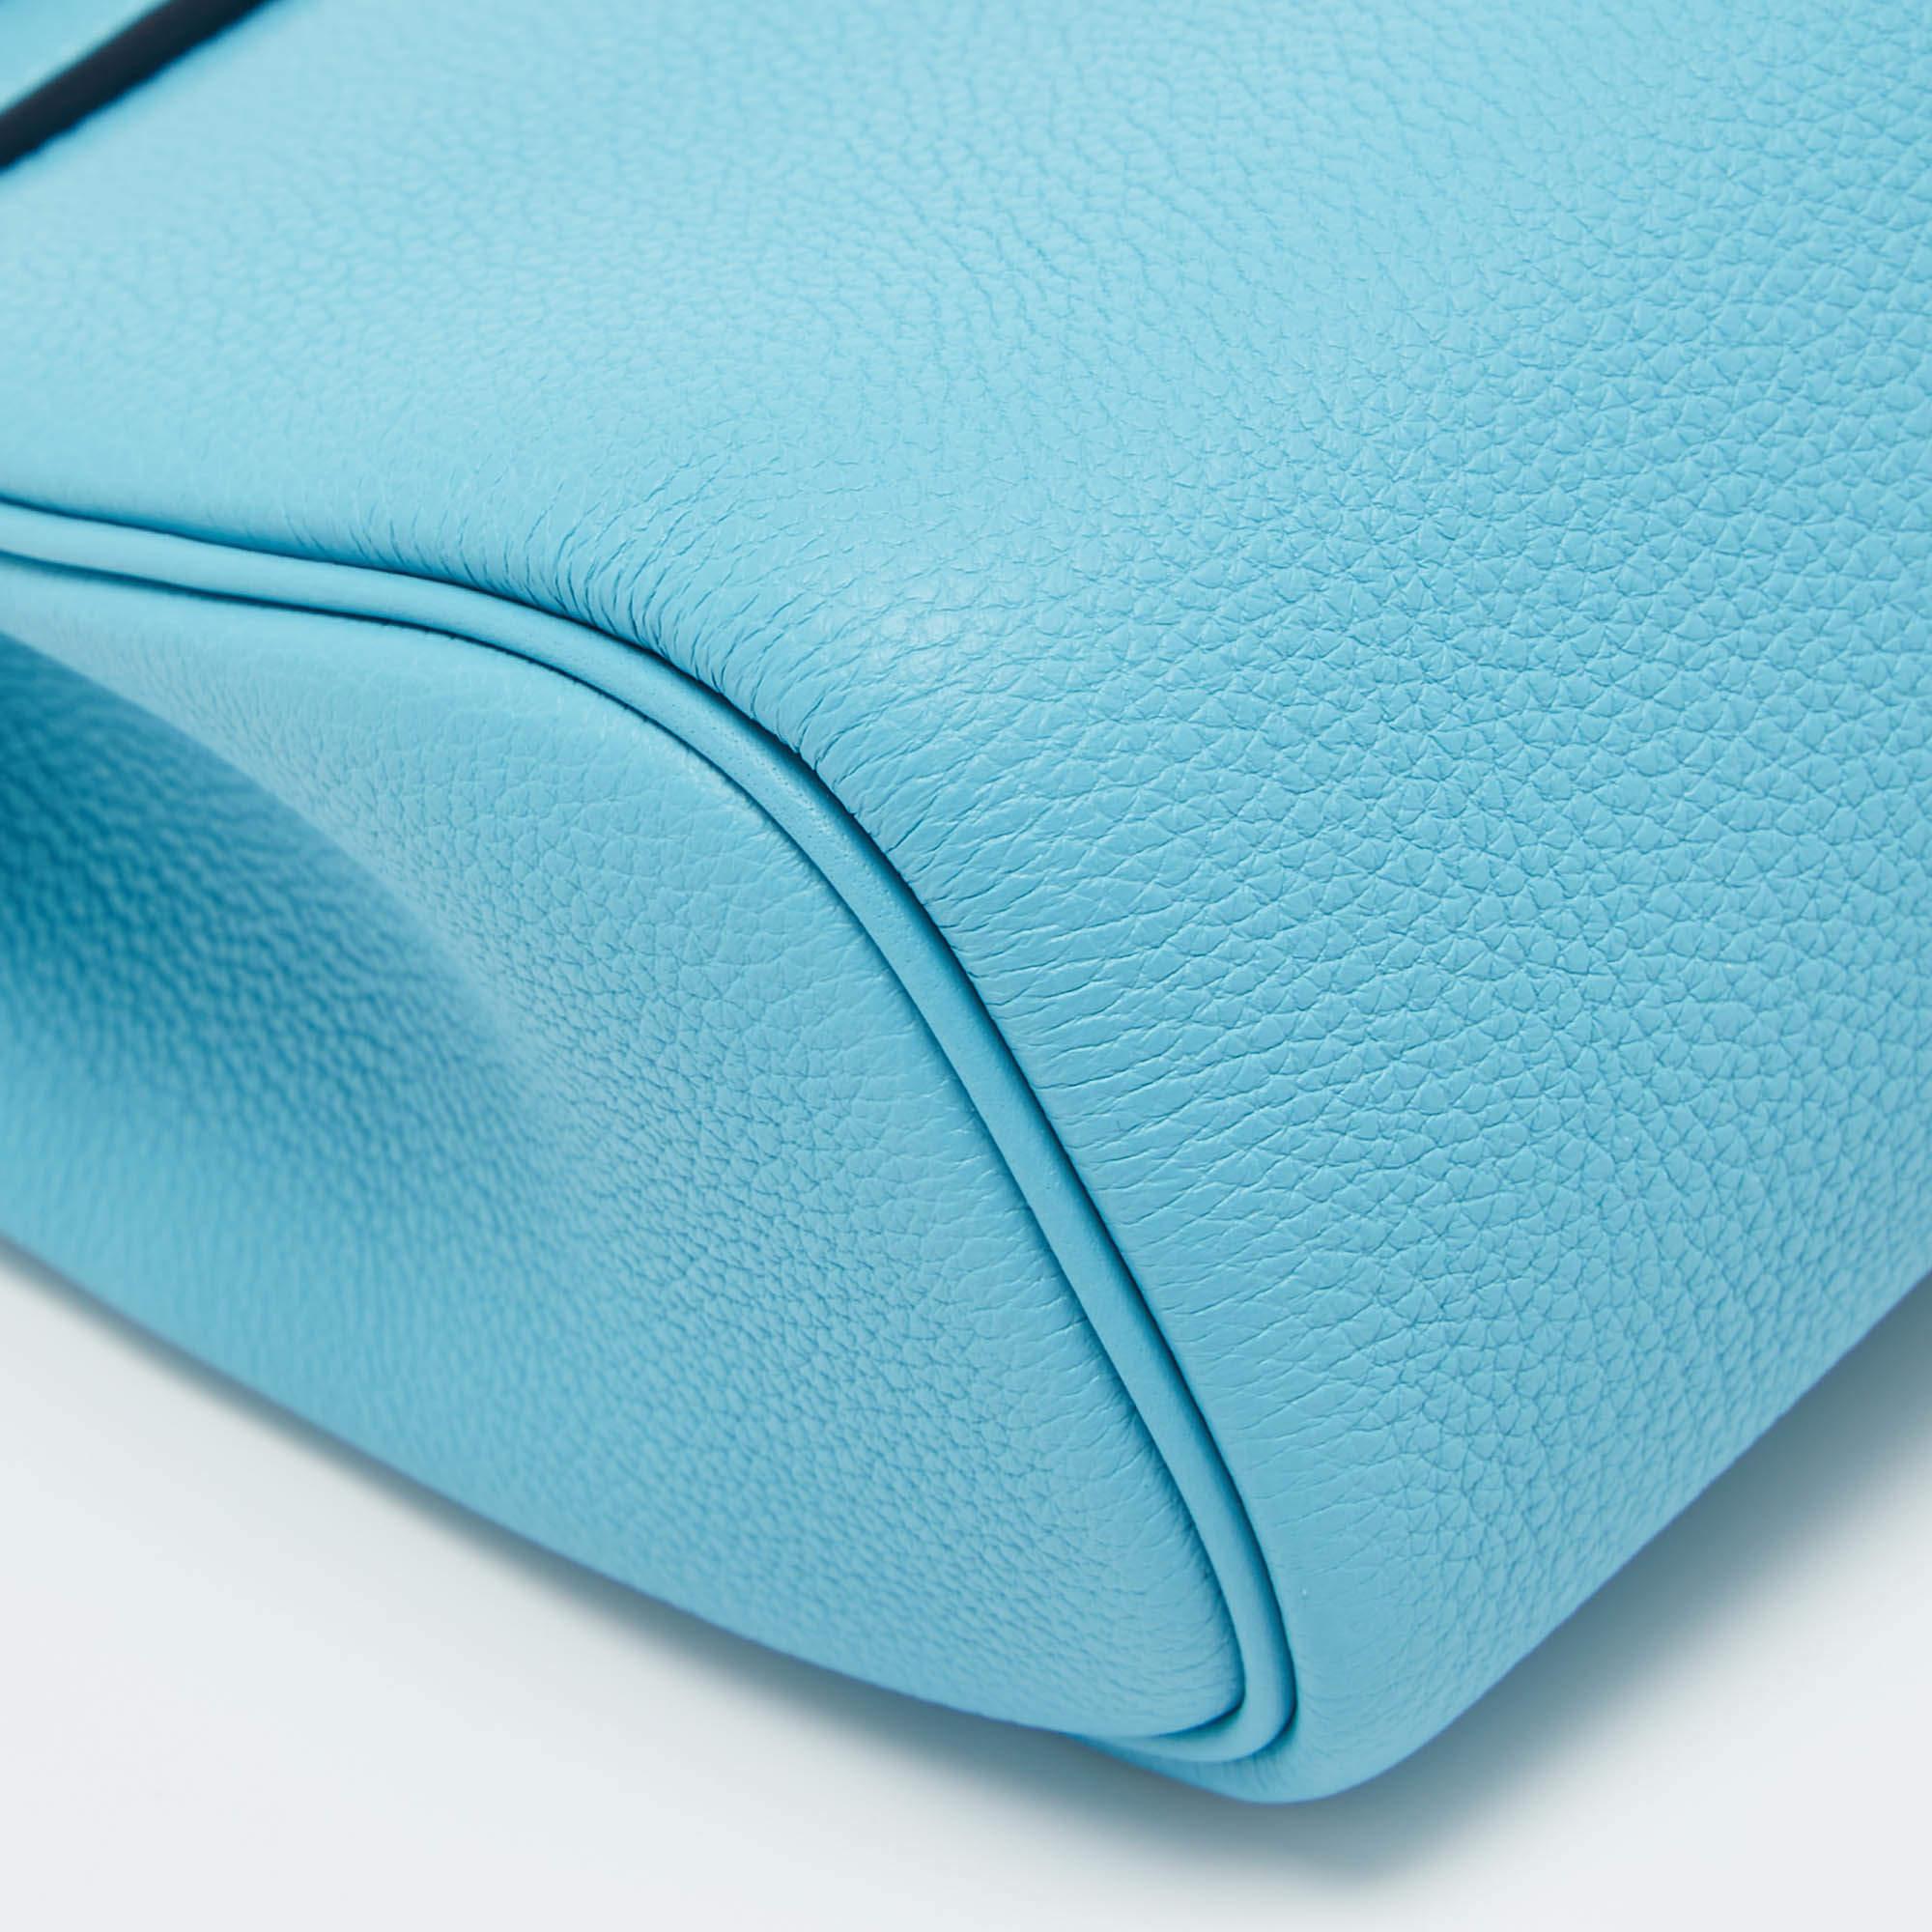 Women's Hermès Bleu du Nord Togo Leather Palladium Finish Hac A Dos PM Bag For Sale